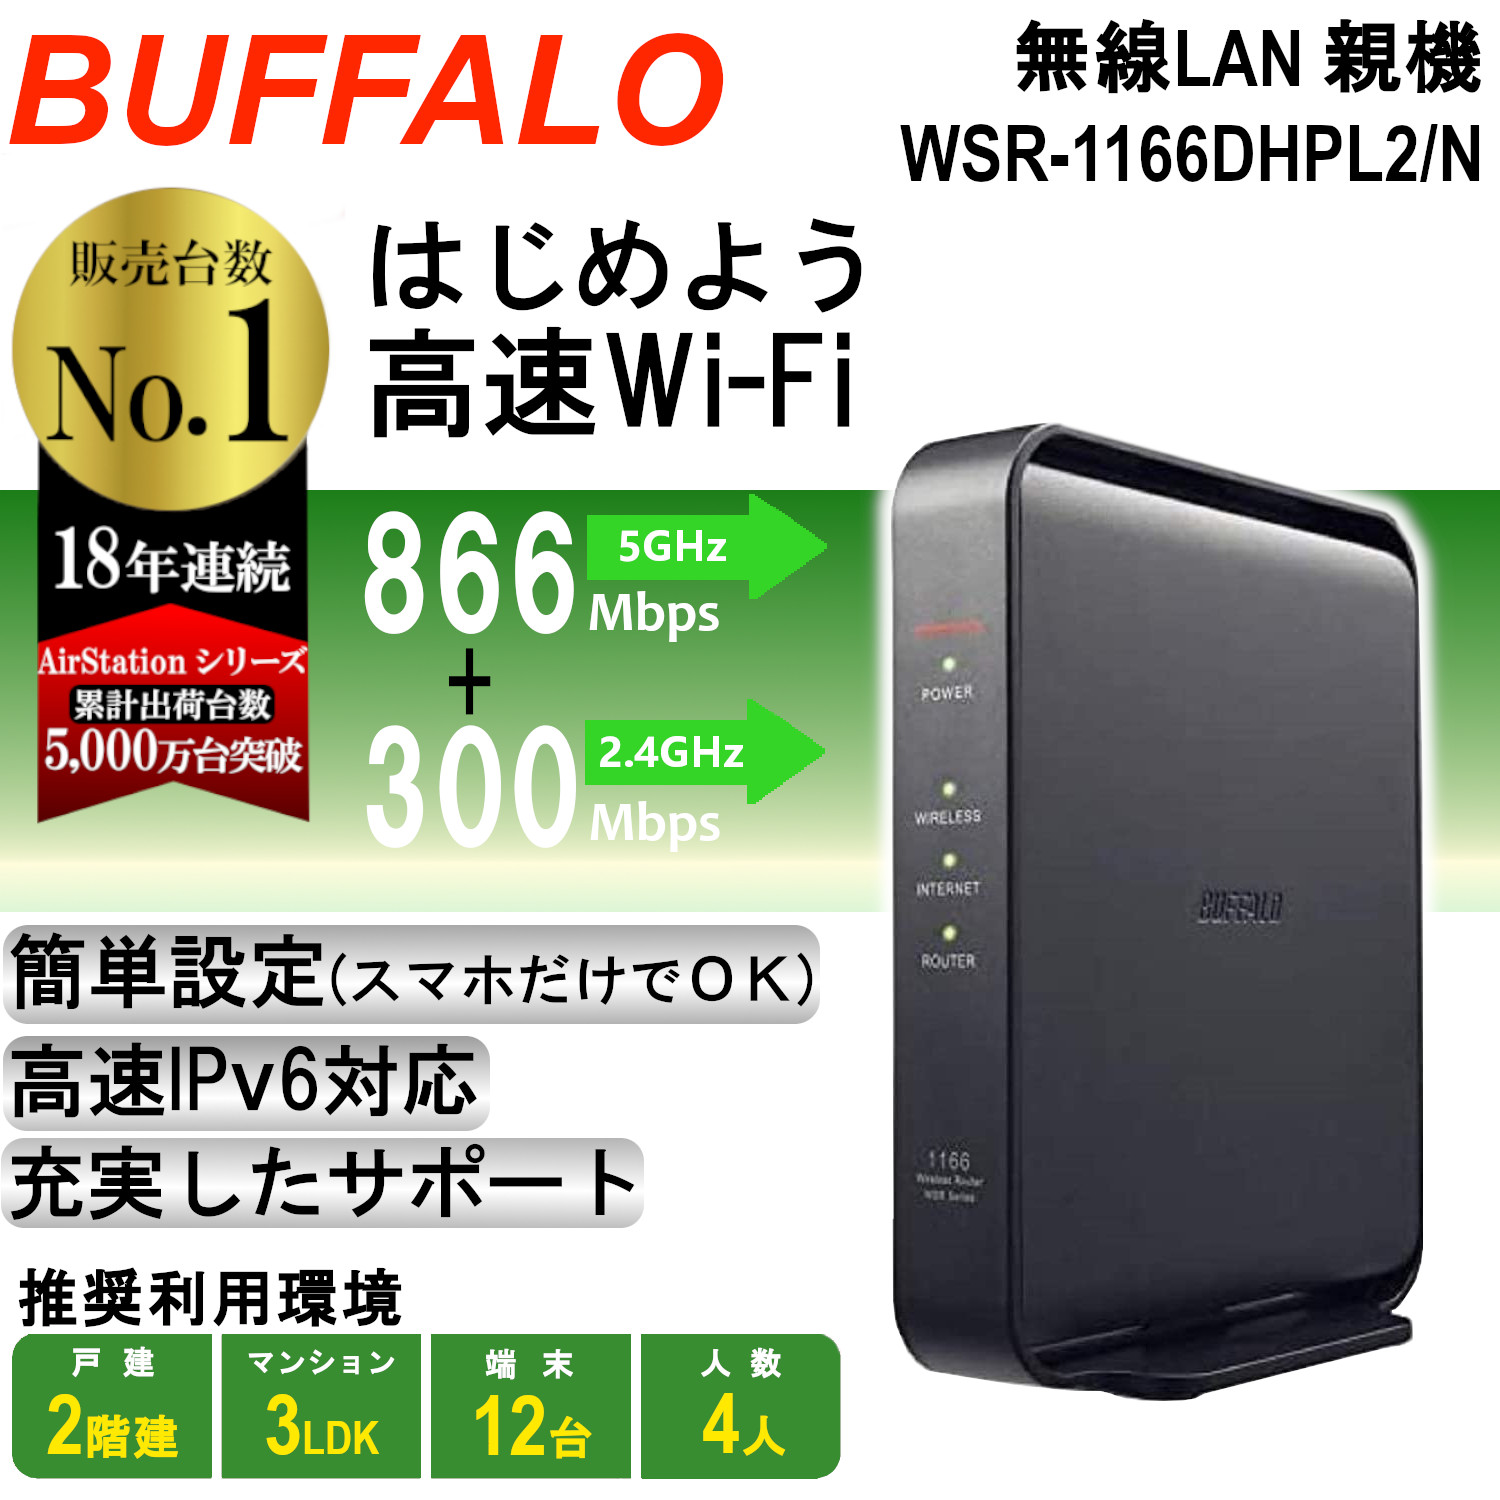 超安い品質 Wi-Fi バッファロー WHR-1166DHP BUFFALO 無線LAN ac